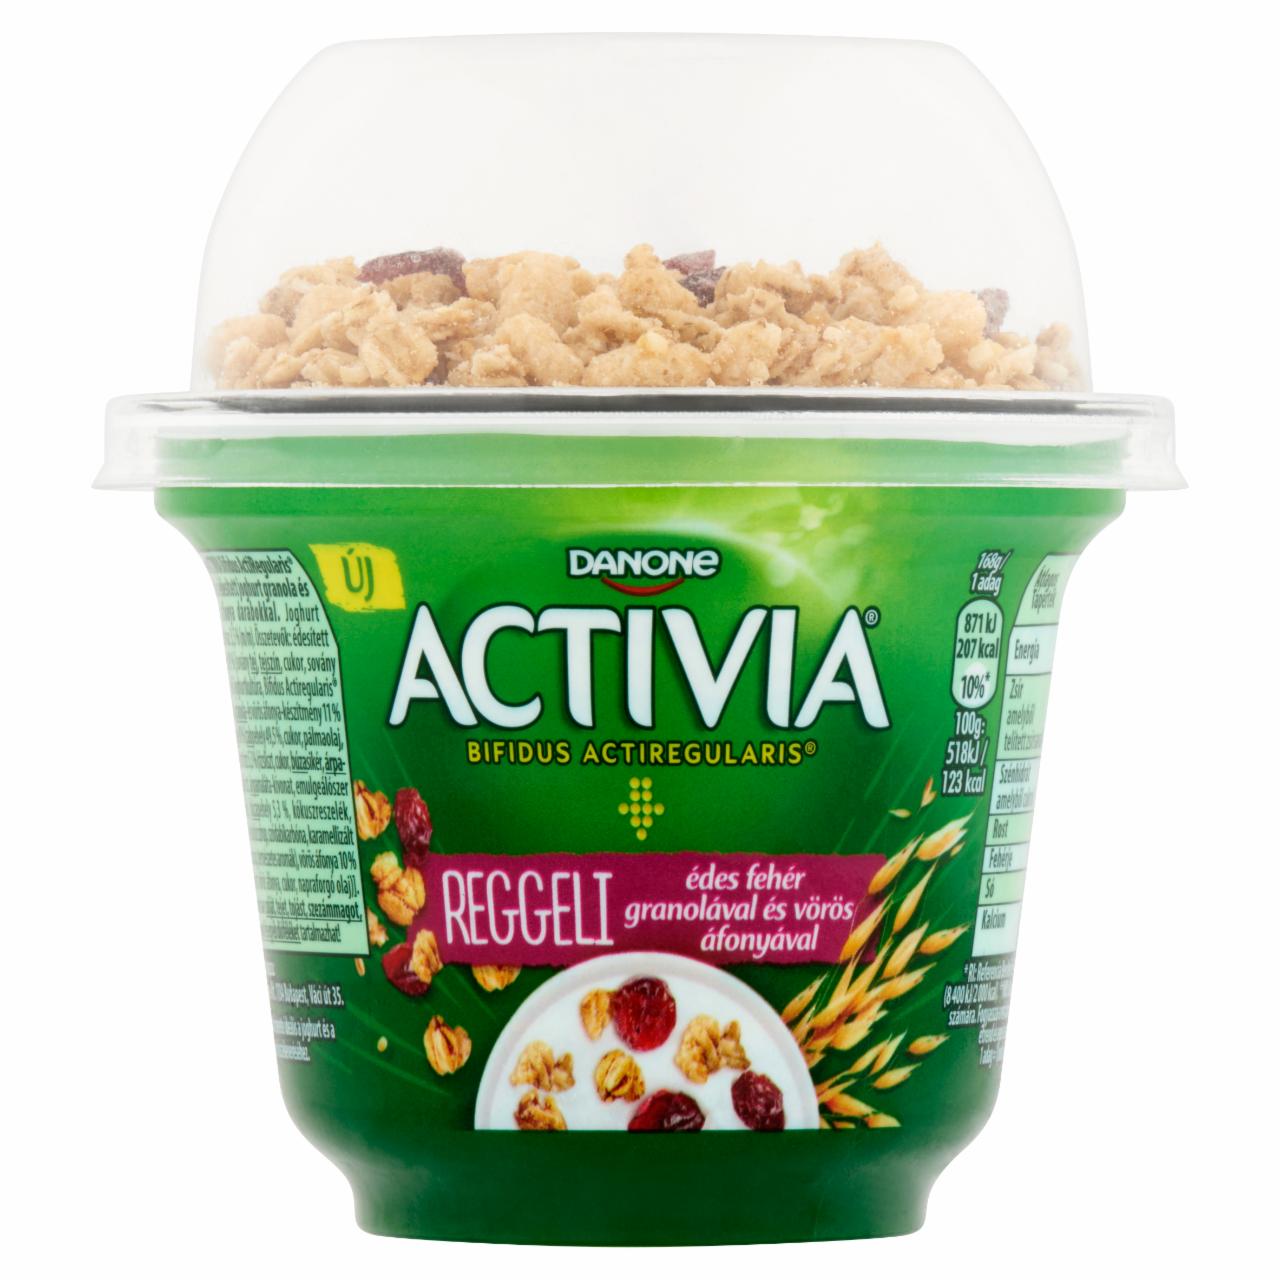 Képek - Danone Activia Reggeli granola-vörösáfonya, élőflórás édesített joghurt 168 g